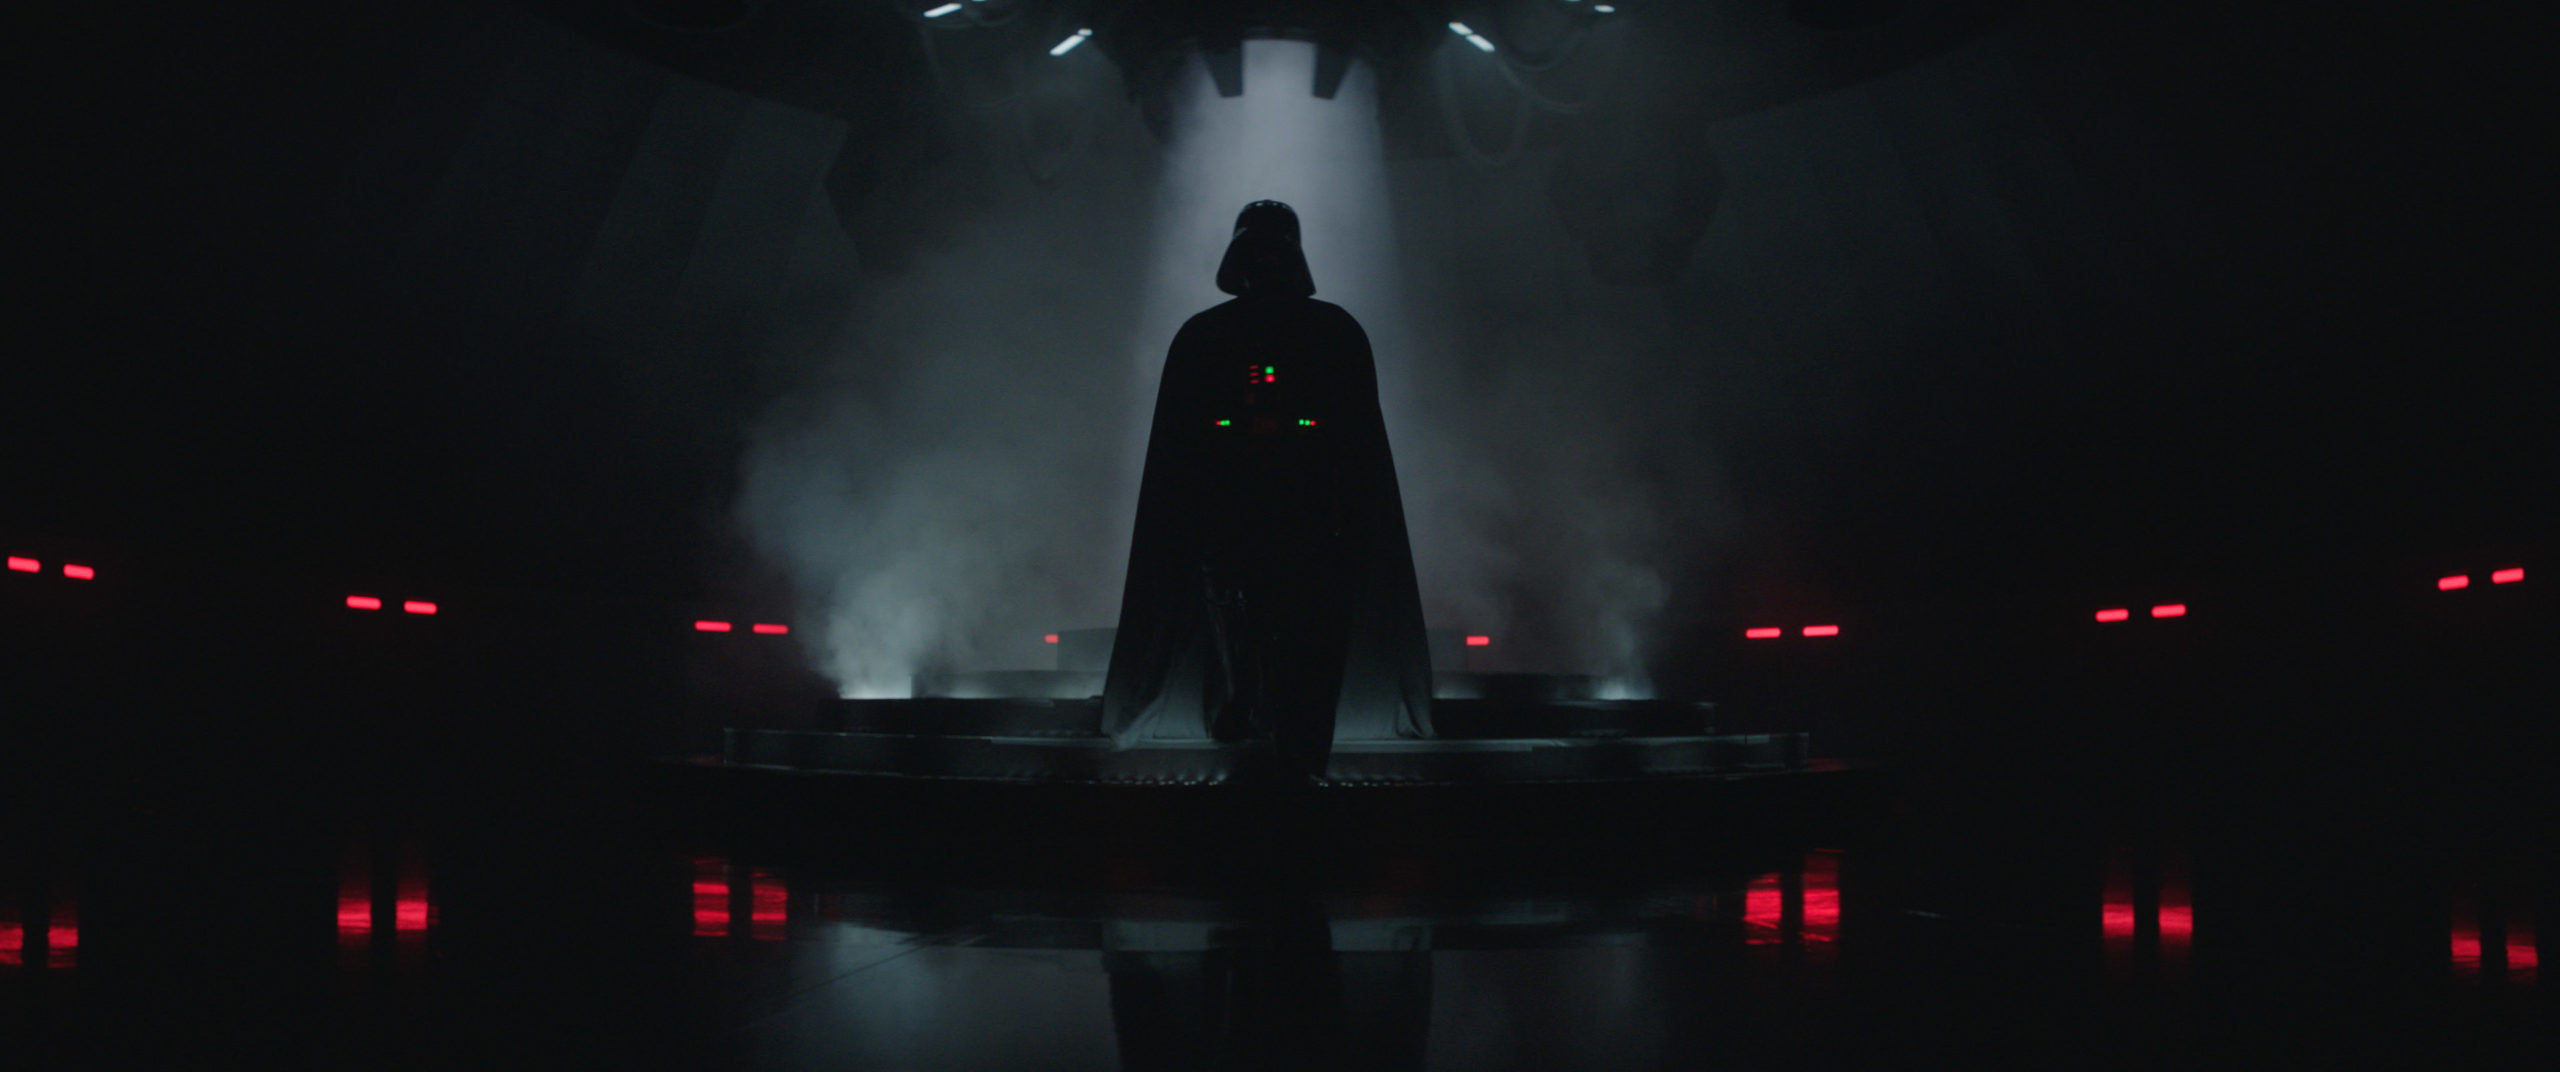 Le sinistre Darth Vader sera de retour alors qu'il est obsédé à l'idée de chasser les derniers Jedi